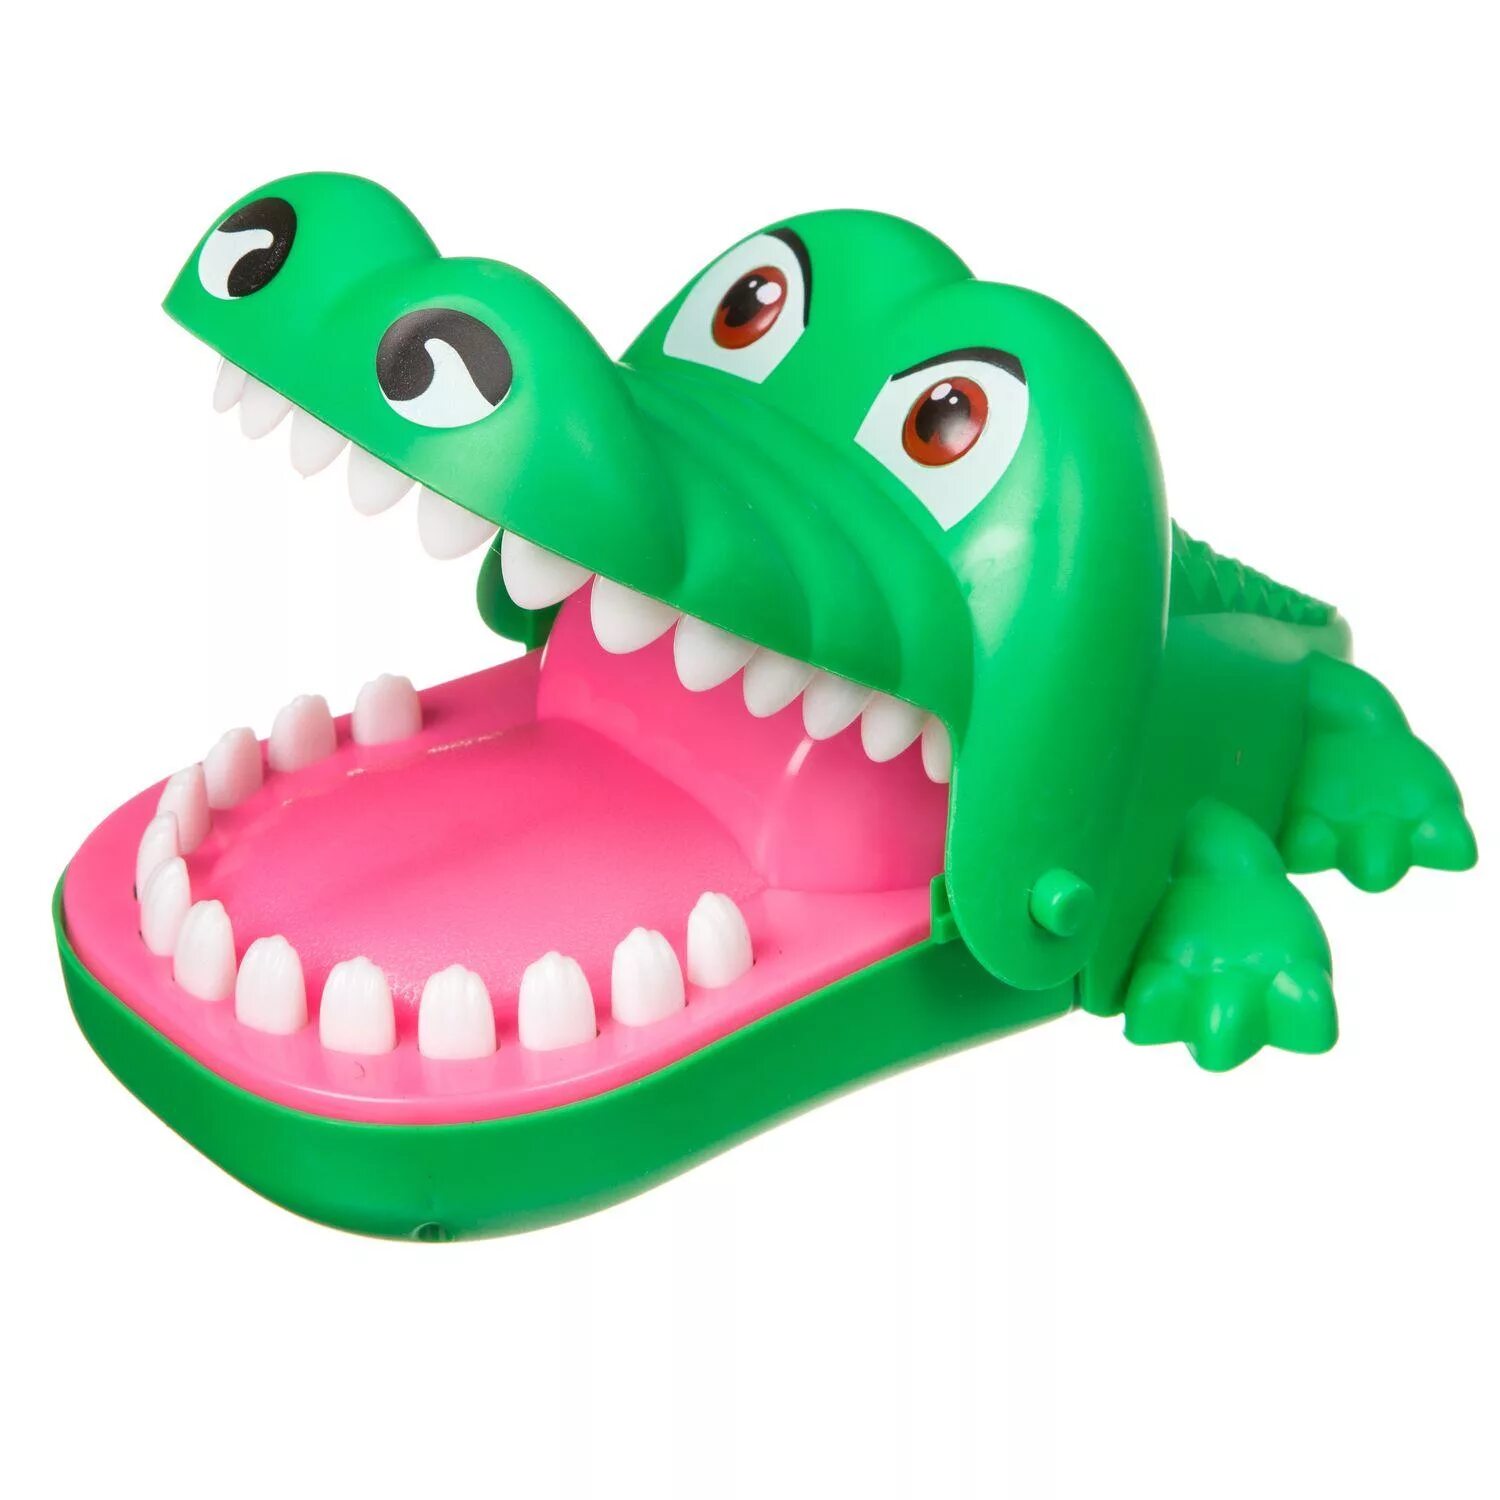 Крокодилы Бондибон. Настольная игра Bondibon зубастый крокодил вв2073. Настольная игра Bondibon зубастый крокодил вв3692. Настольная игра Bondibon зубастый динозавр вв3688.